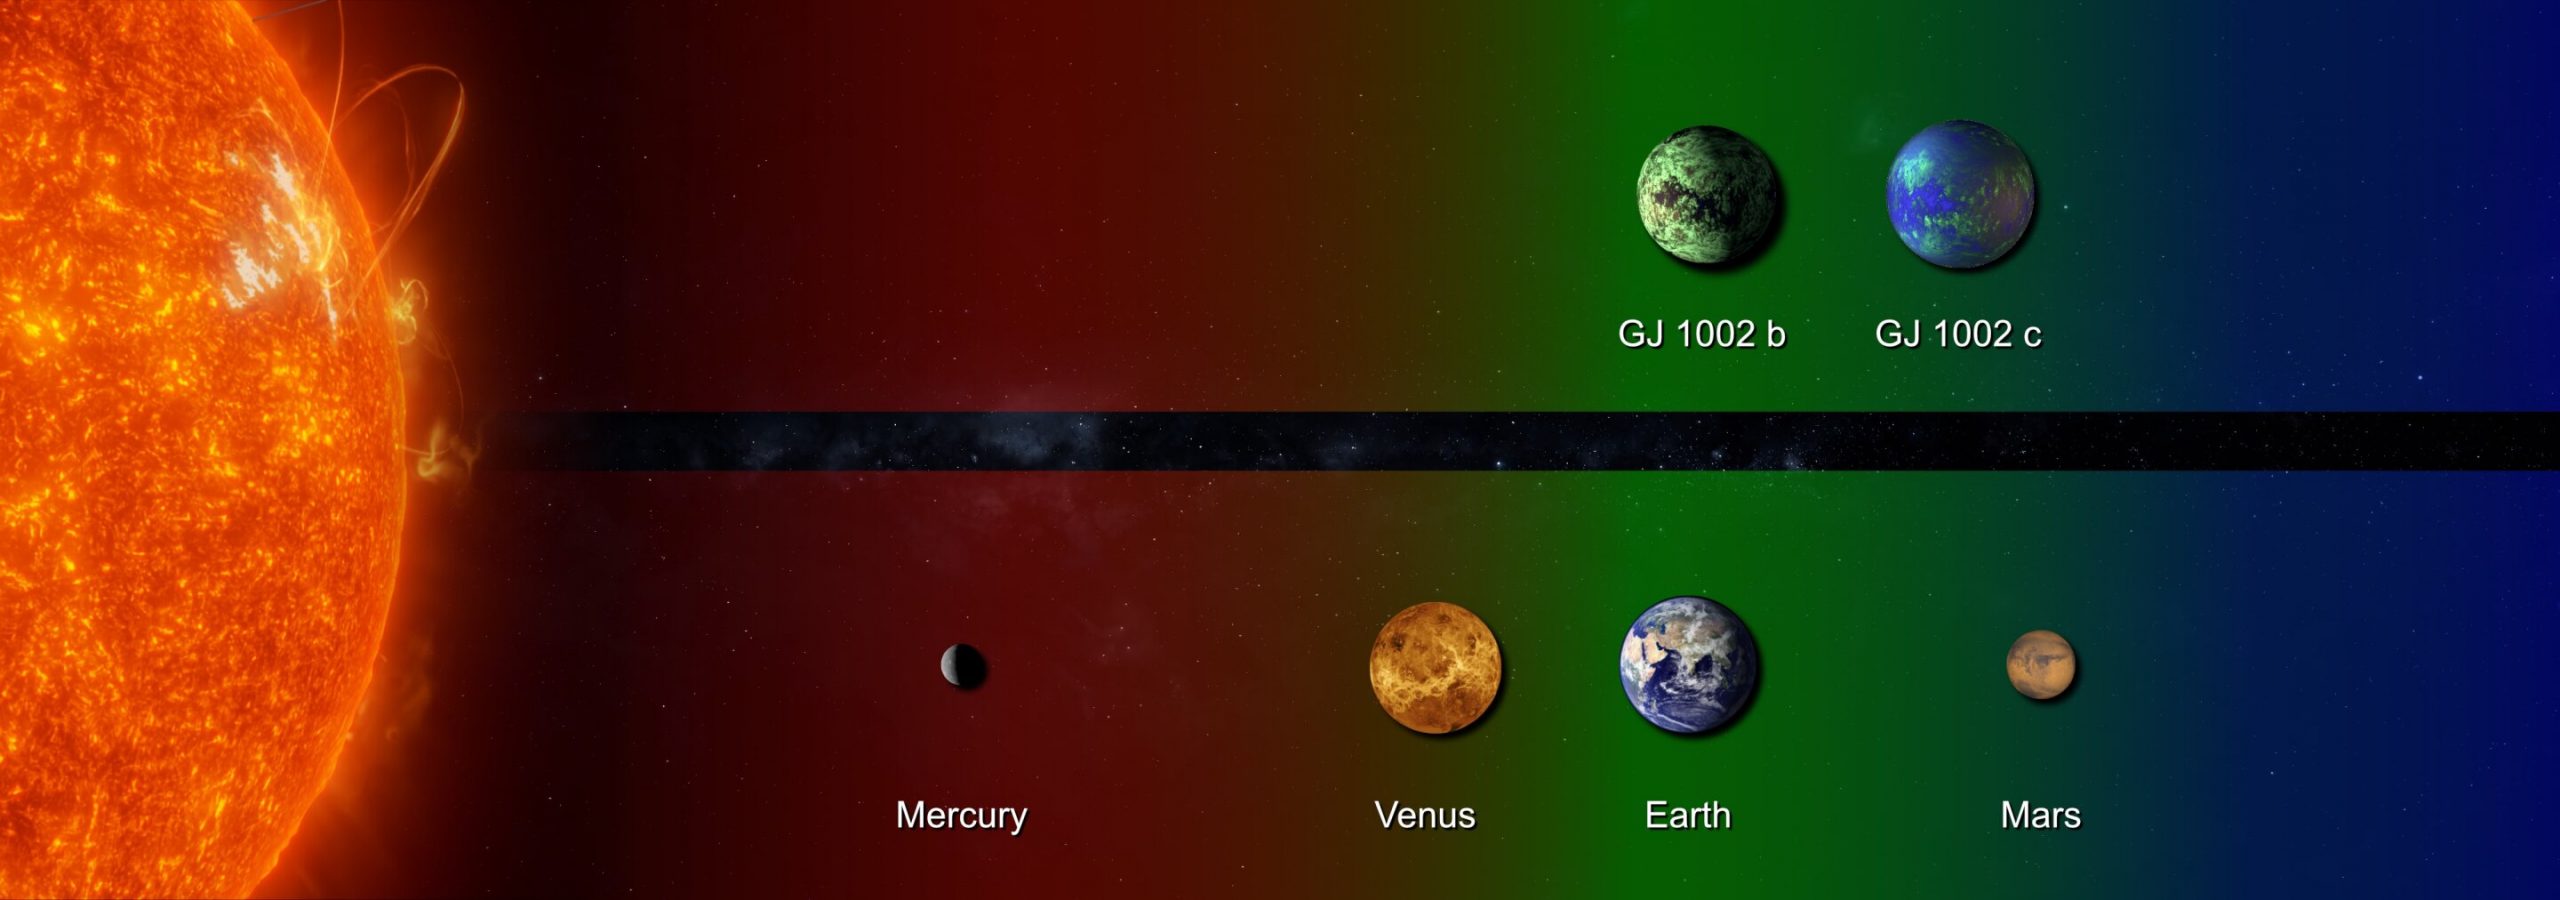 Cuantos planetas hay en el sistema solar